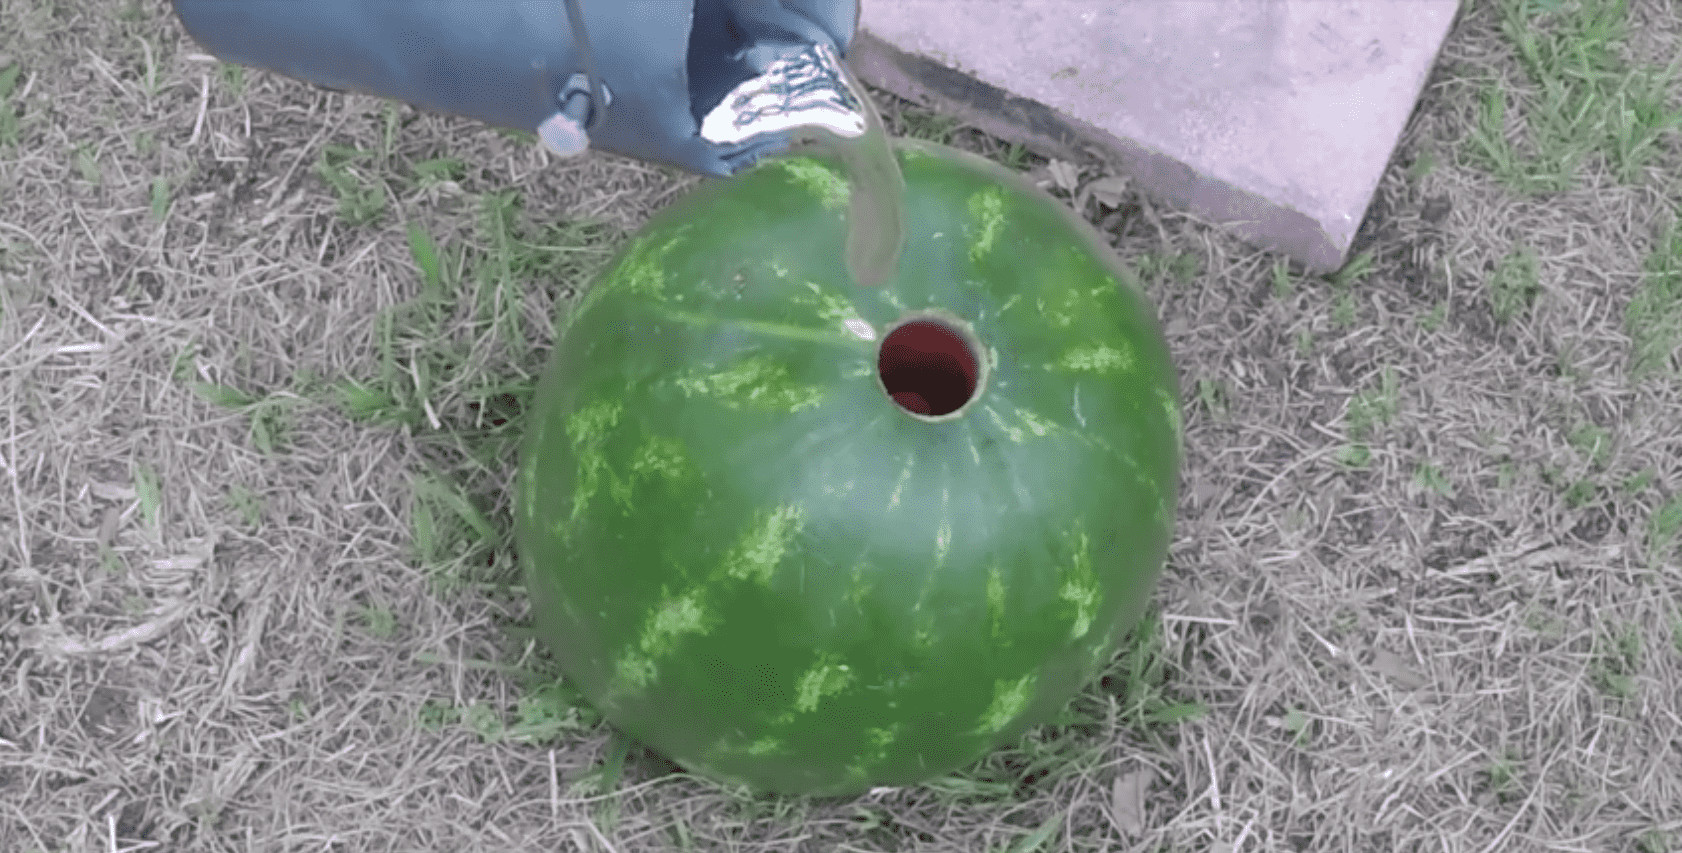 aluminium in water melon